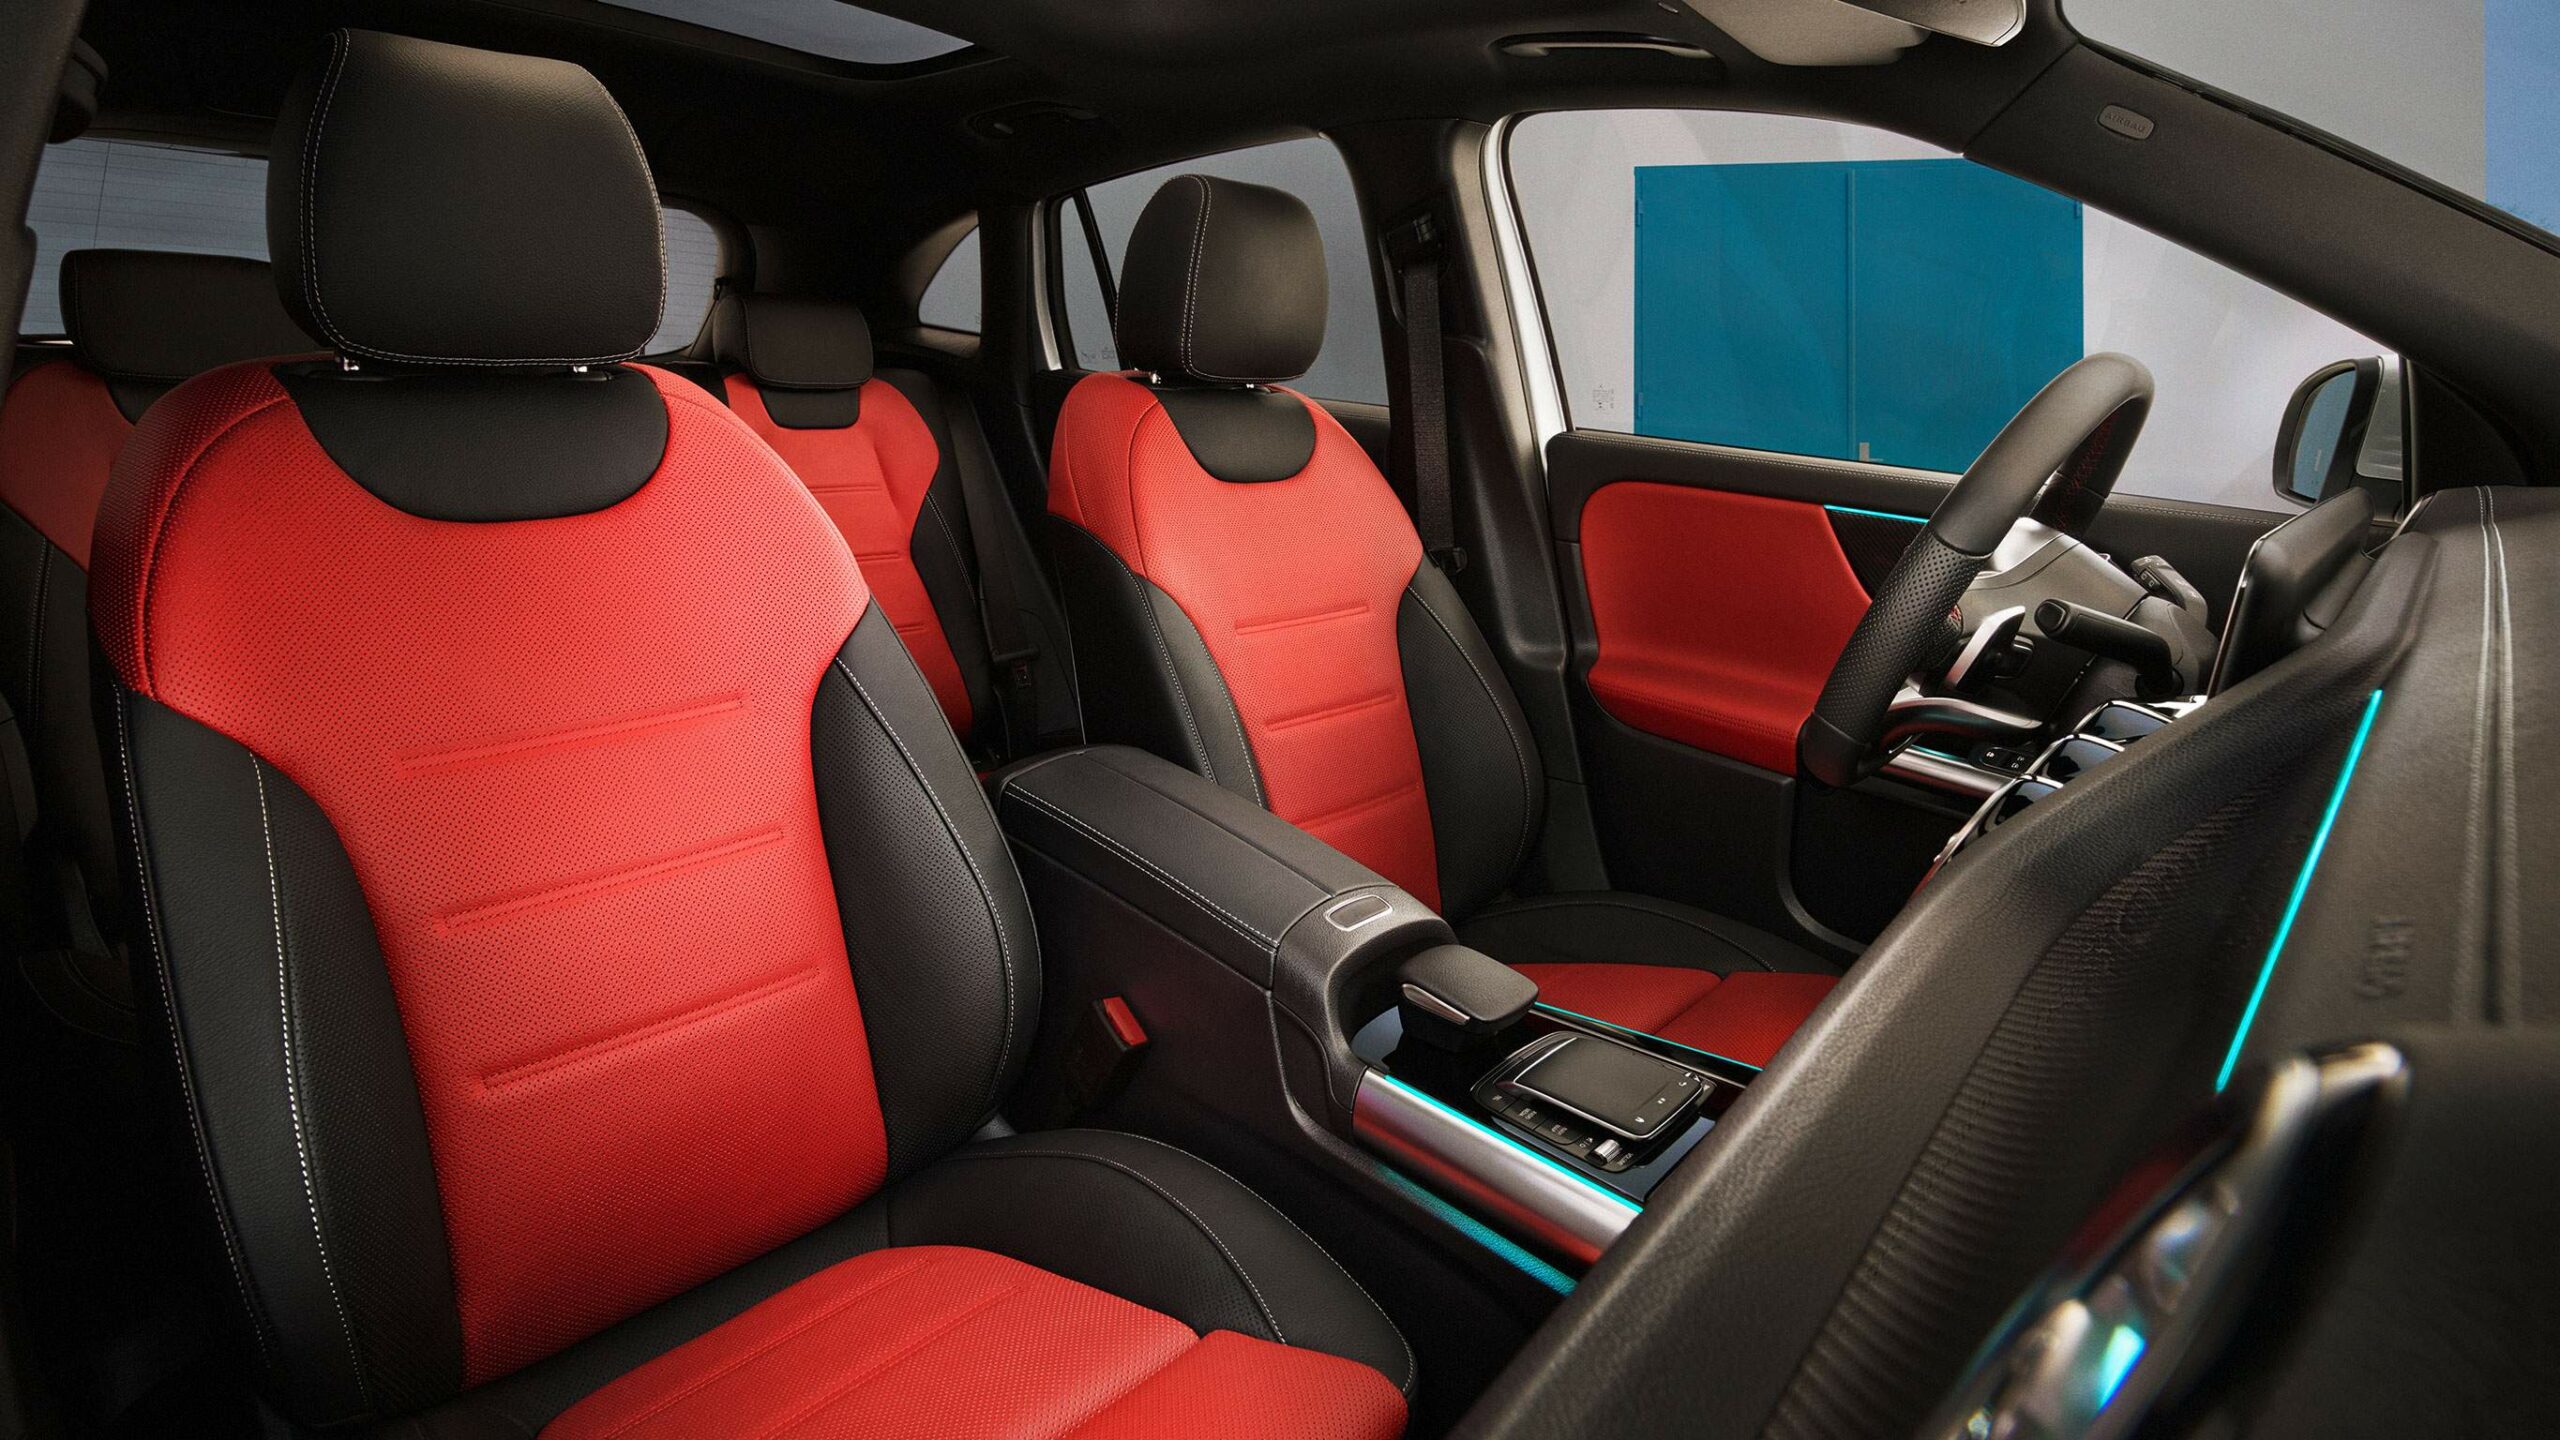 Asientos deportivos rojos dentro de la GLA SUV de Mercedes-Benz